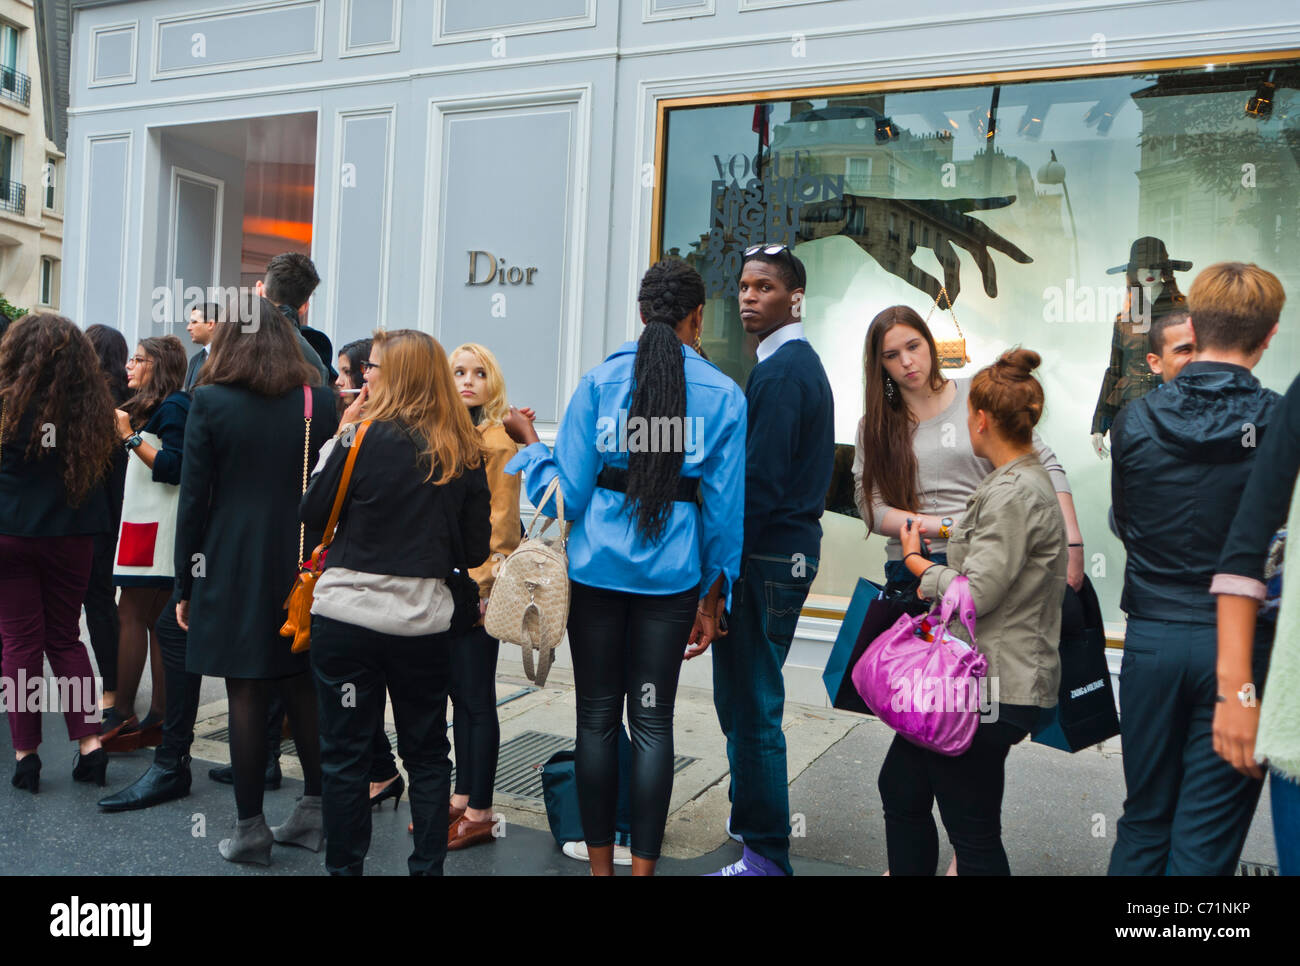 Parigi, Francia, grande folla adolescenti, giovani in coda all'esterno, "Fashion N-ight", "Dior Store", Street scene parigine, mode labels, black shopping Clothes store, dior, diverse persone in tutto il mondo 30 avenue montaigne Foto Stock